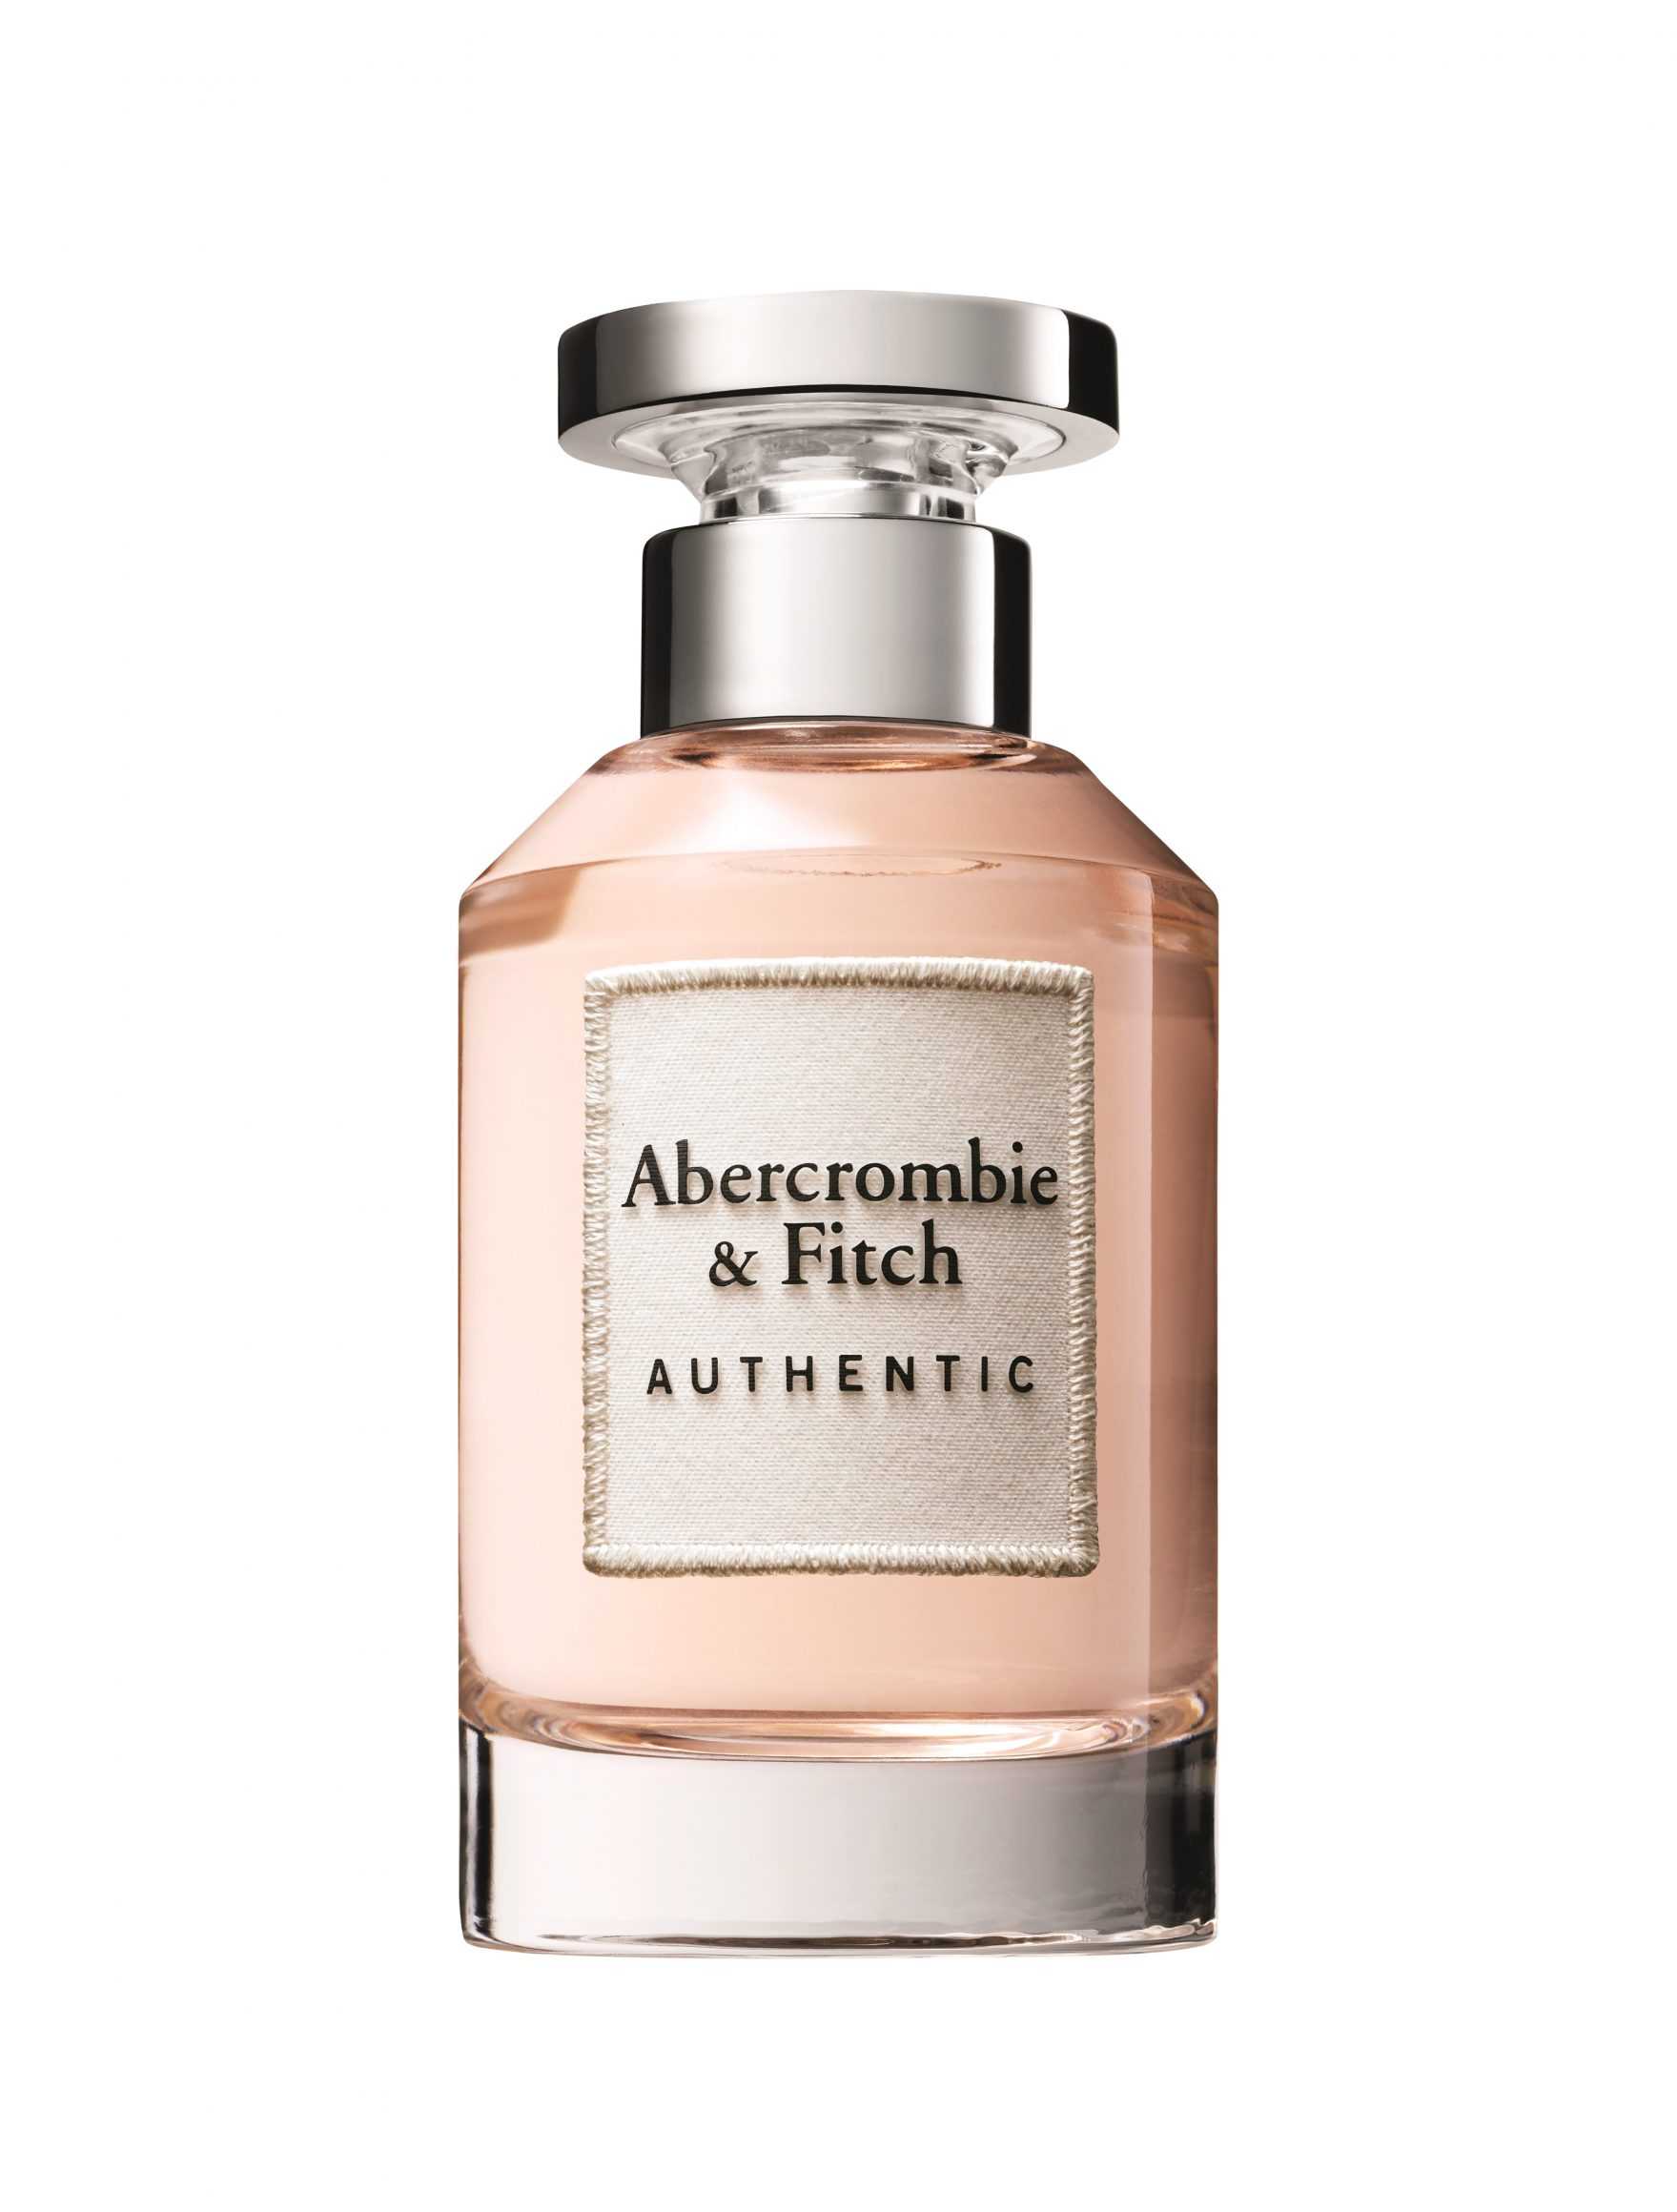 Abercrombie & fitch: модный бренд с многолетней историей